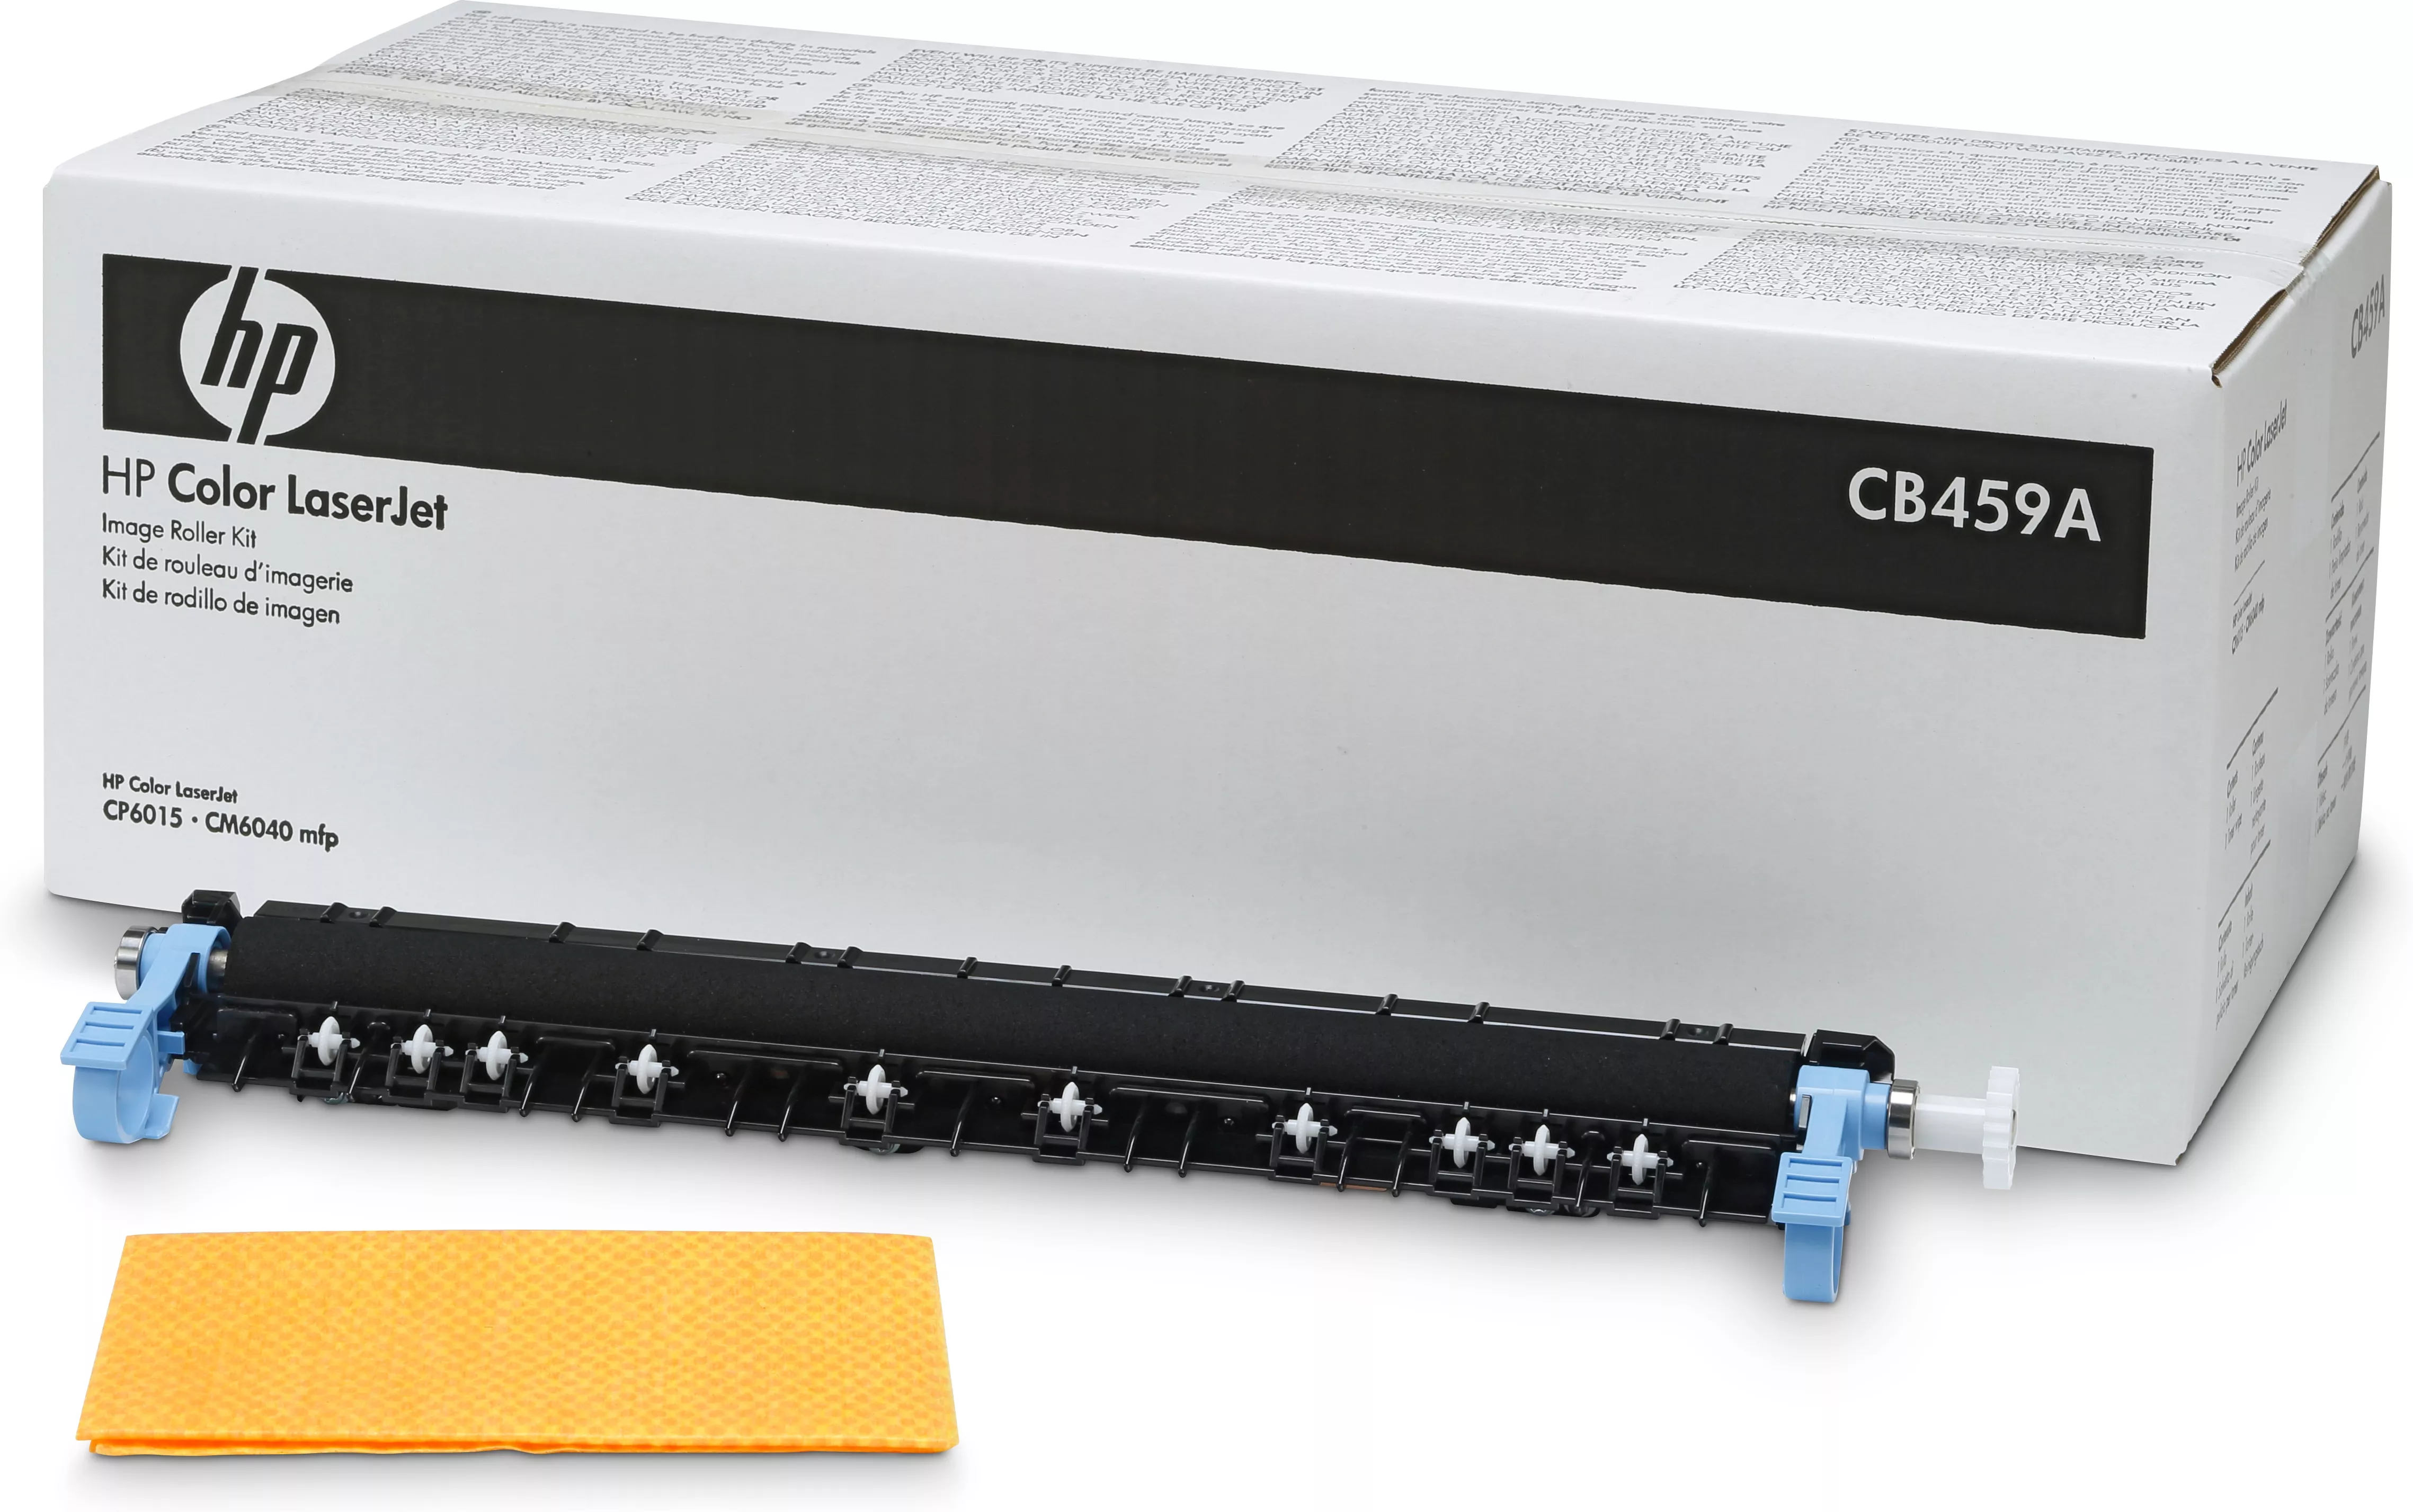 Achat HP Color LaserJet CB459A Roller Kit au meilleur prix